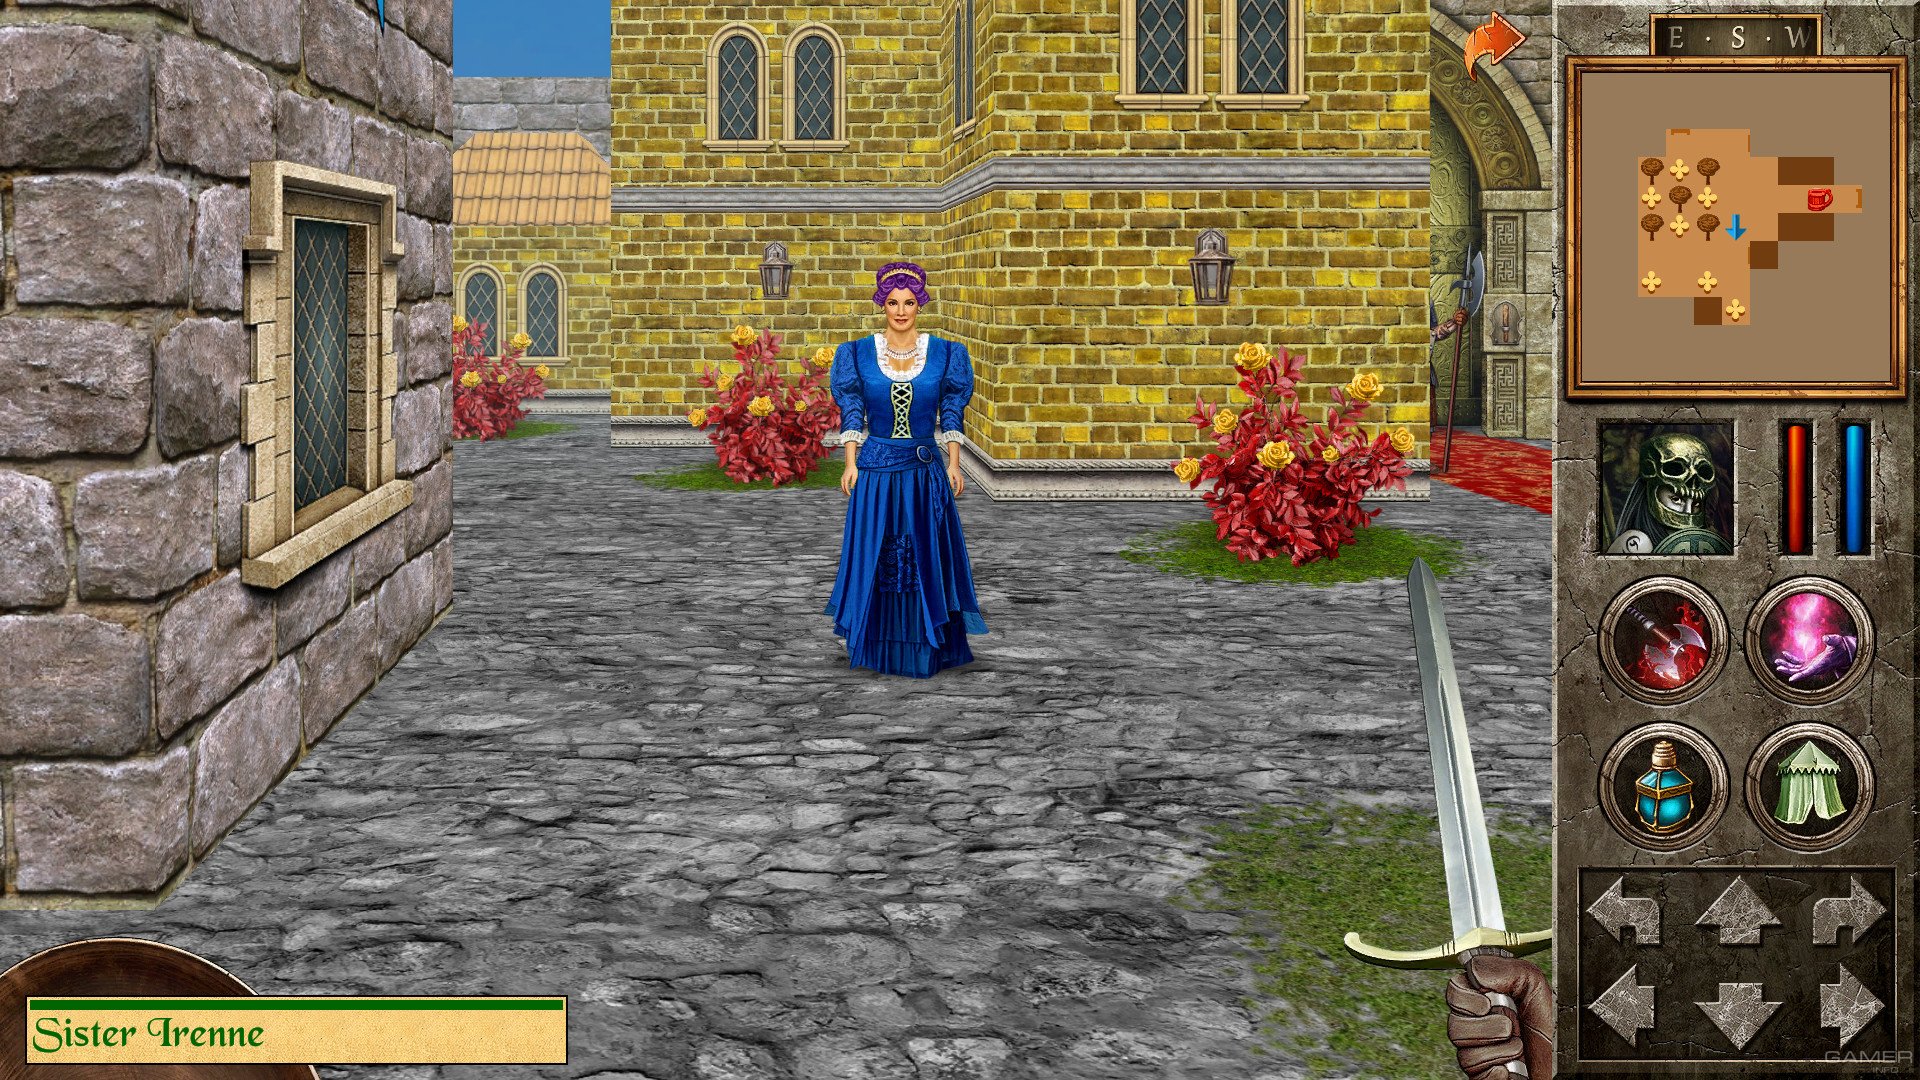 Включи квест 3. Игра Quest. The Quest игра Redshift. Quest игра 2000. Игра Рыцарский квест.